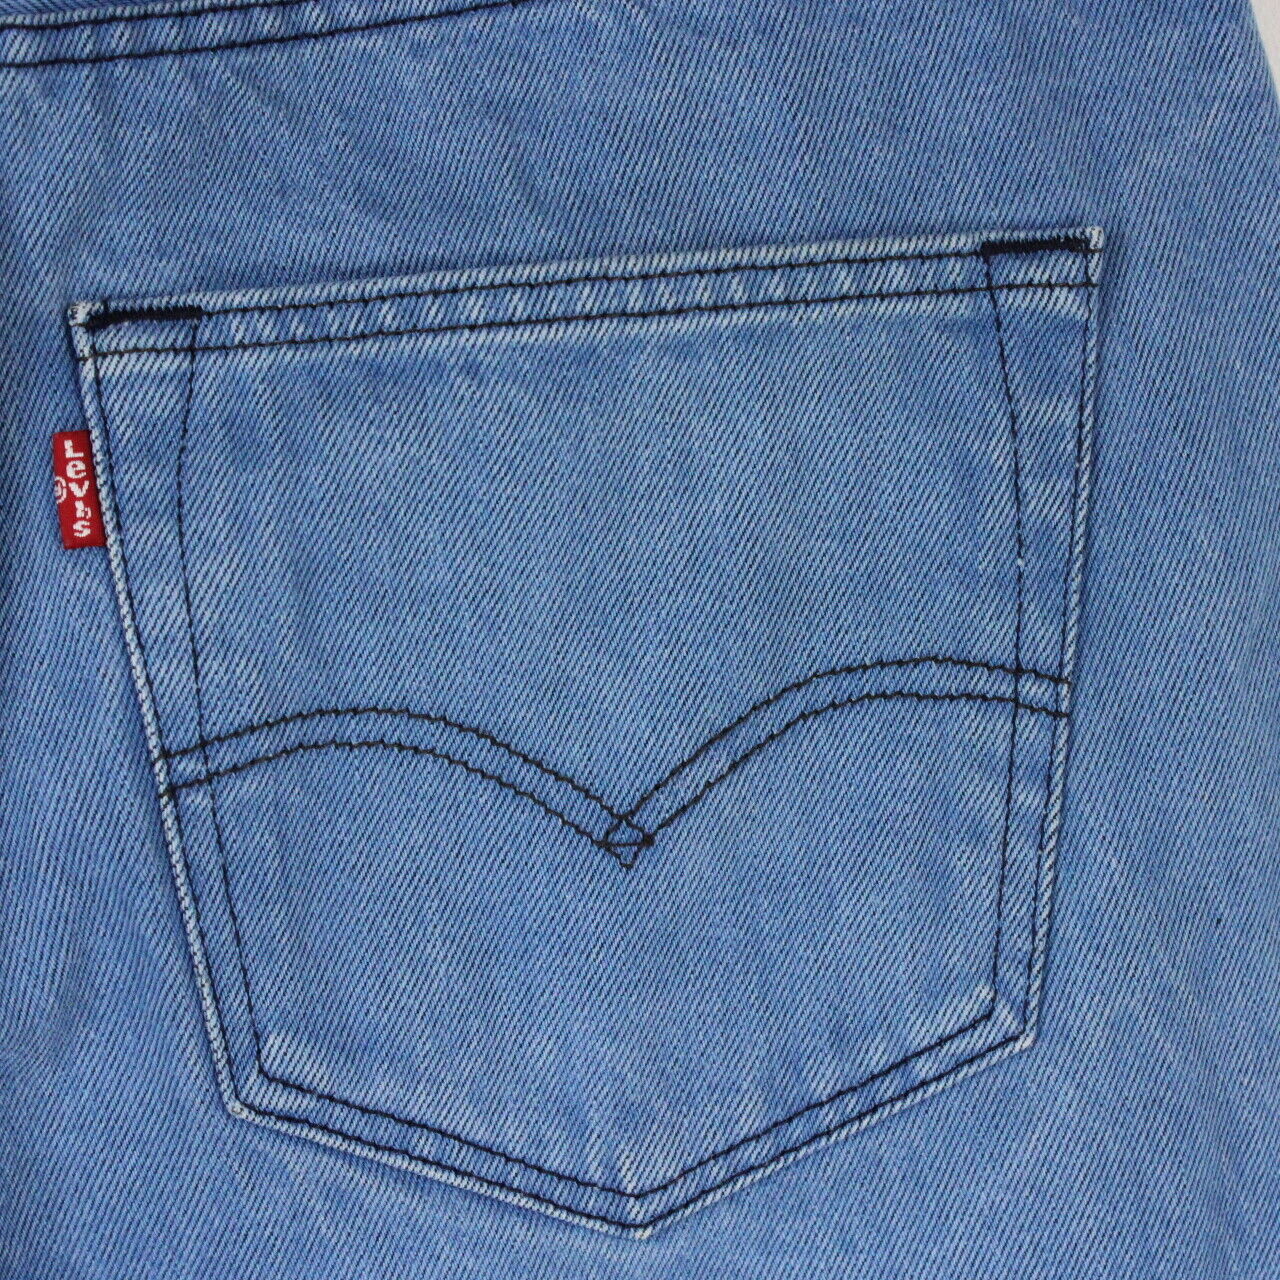 LEVIS 501 Jeans Blue | W34 L32